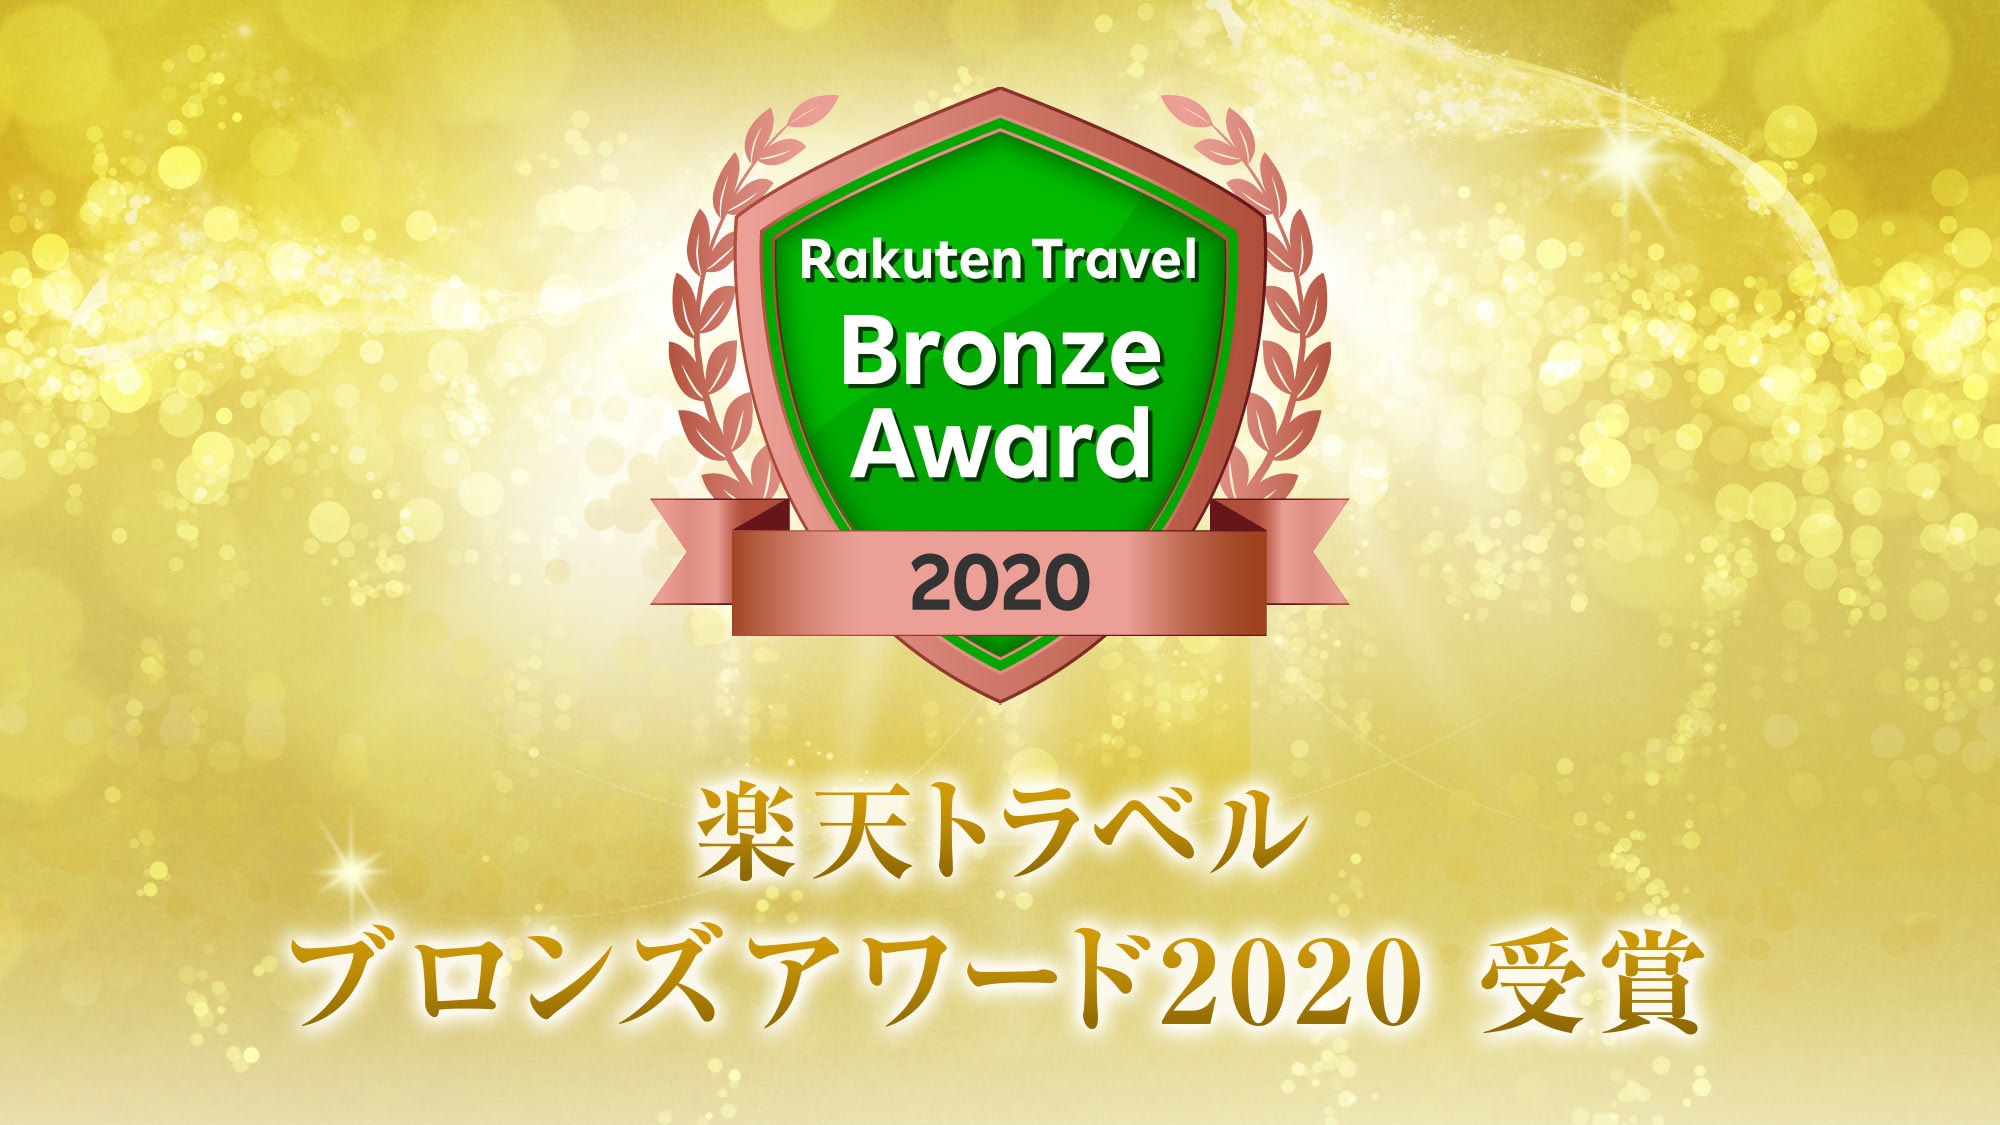 Di antara banyak penginapan, kami memenangkan Rakuten Travel Japan Inn Award 2020.